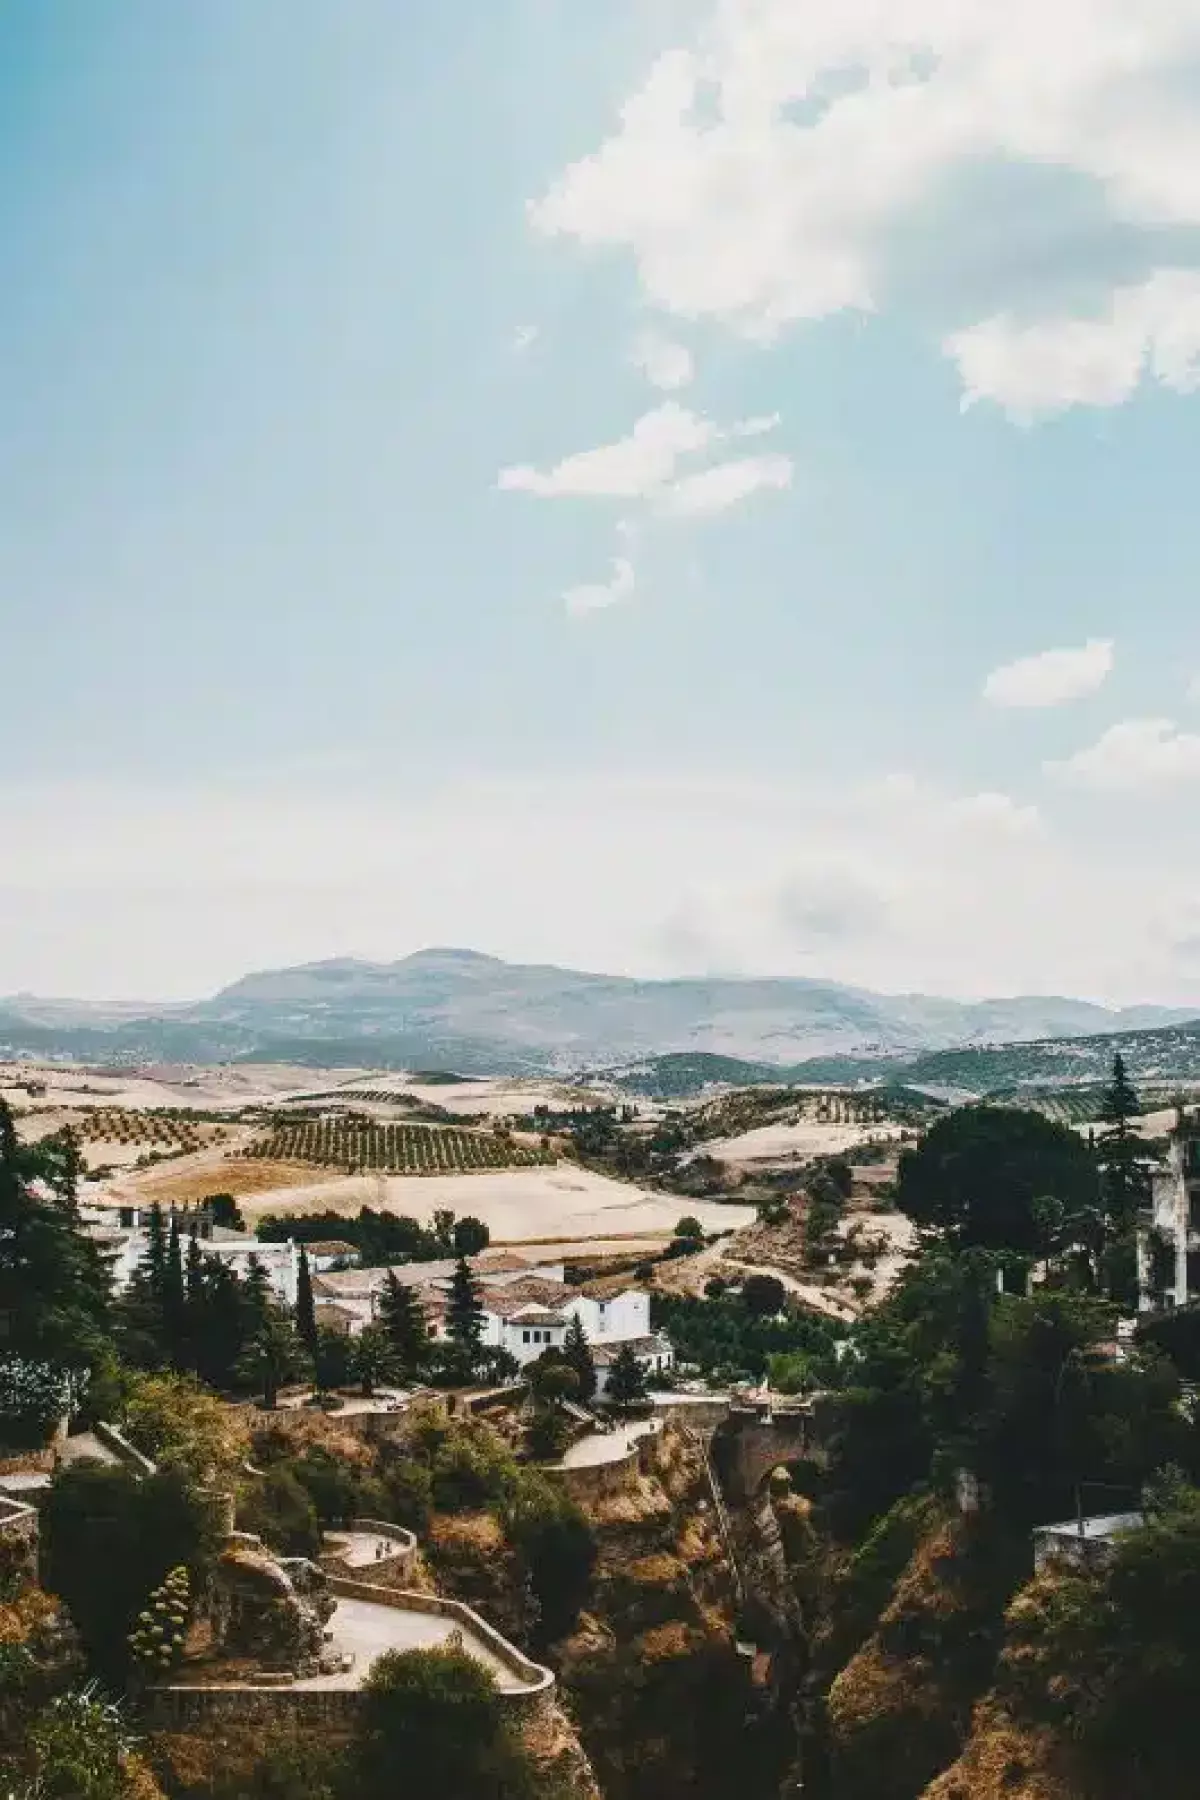 Visiter l'Andalousie en 10 jours - Paysage au coeur des terres andalouses